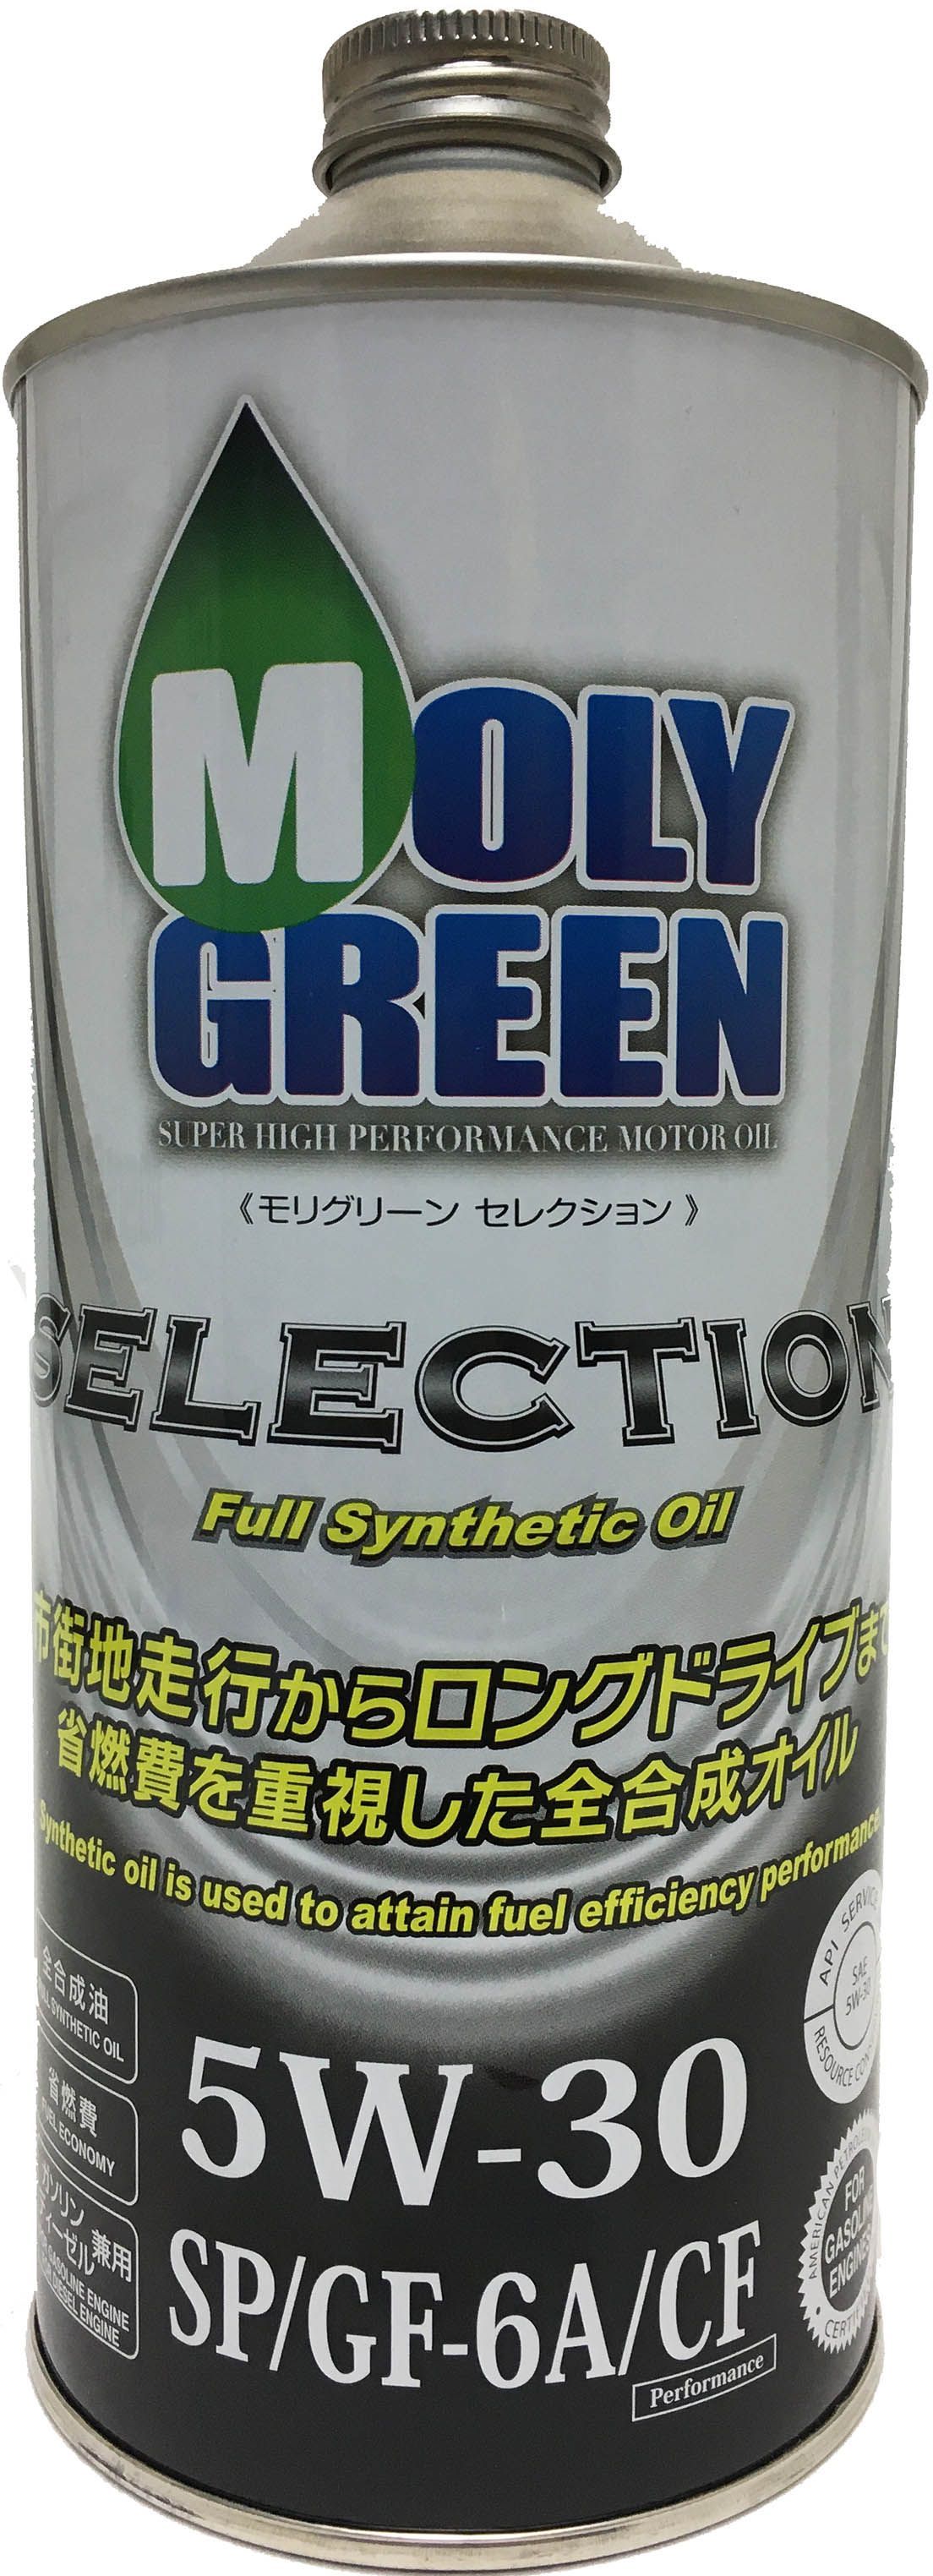 Масло молли грин 5w30. Молли Грин масло. Moly Green selection 5w30 бочка 200. Японское моторное масло Moly Green. Масло Moly Green крышка.